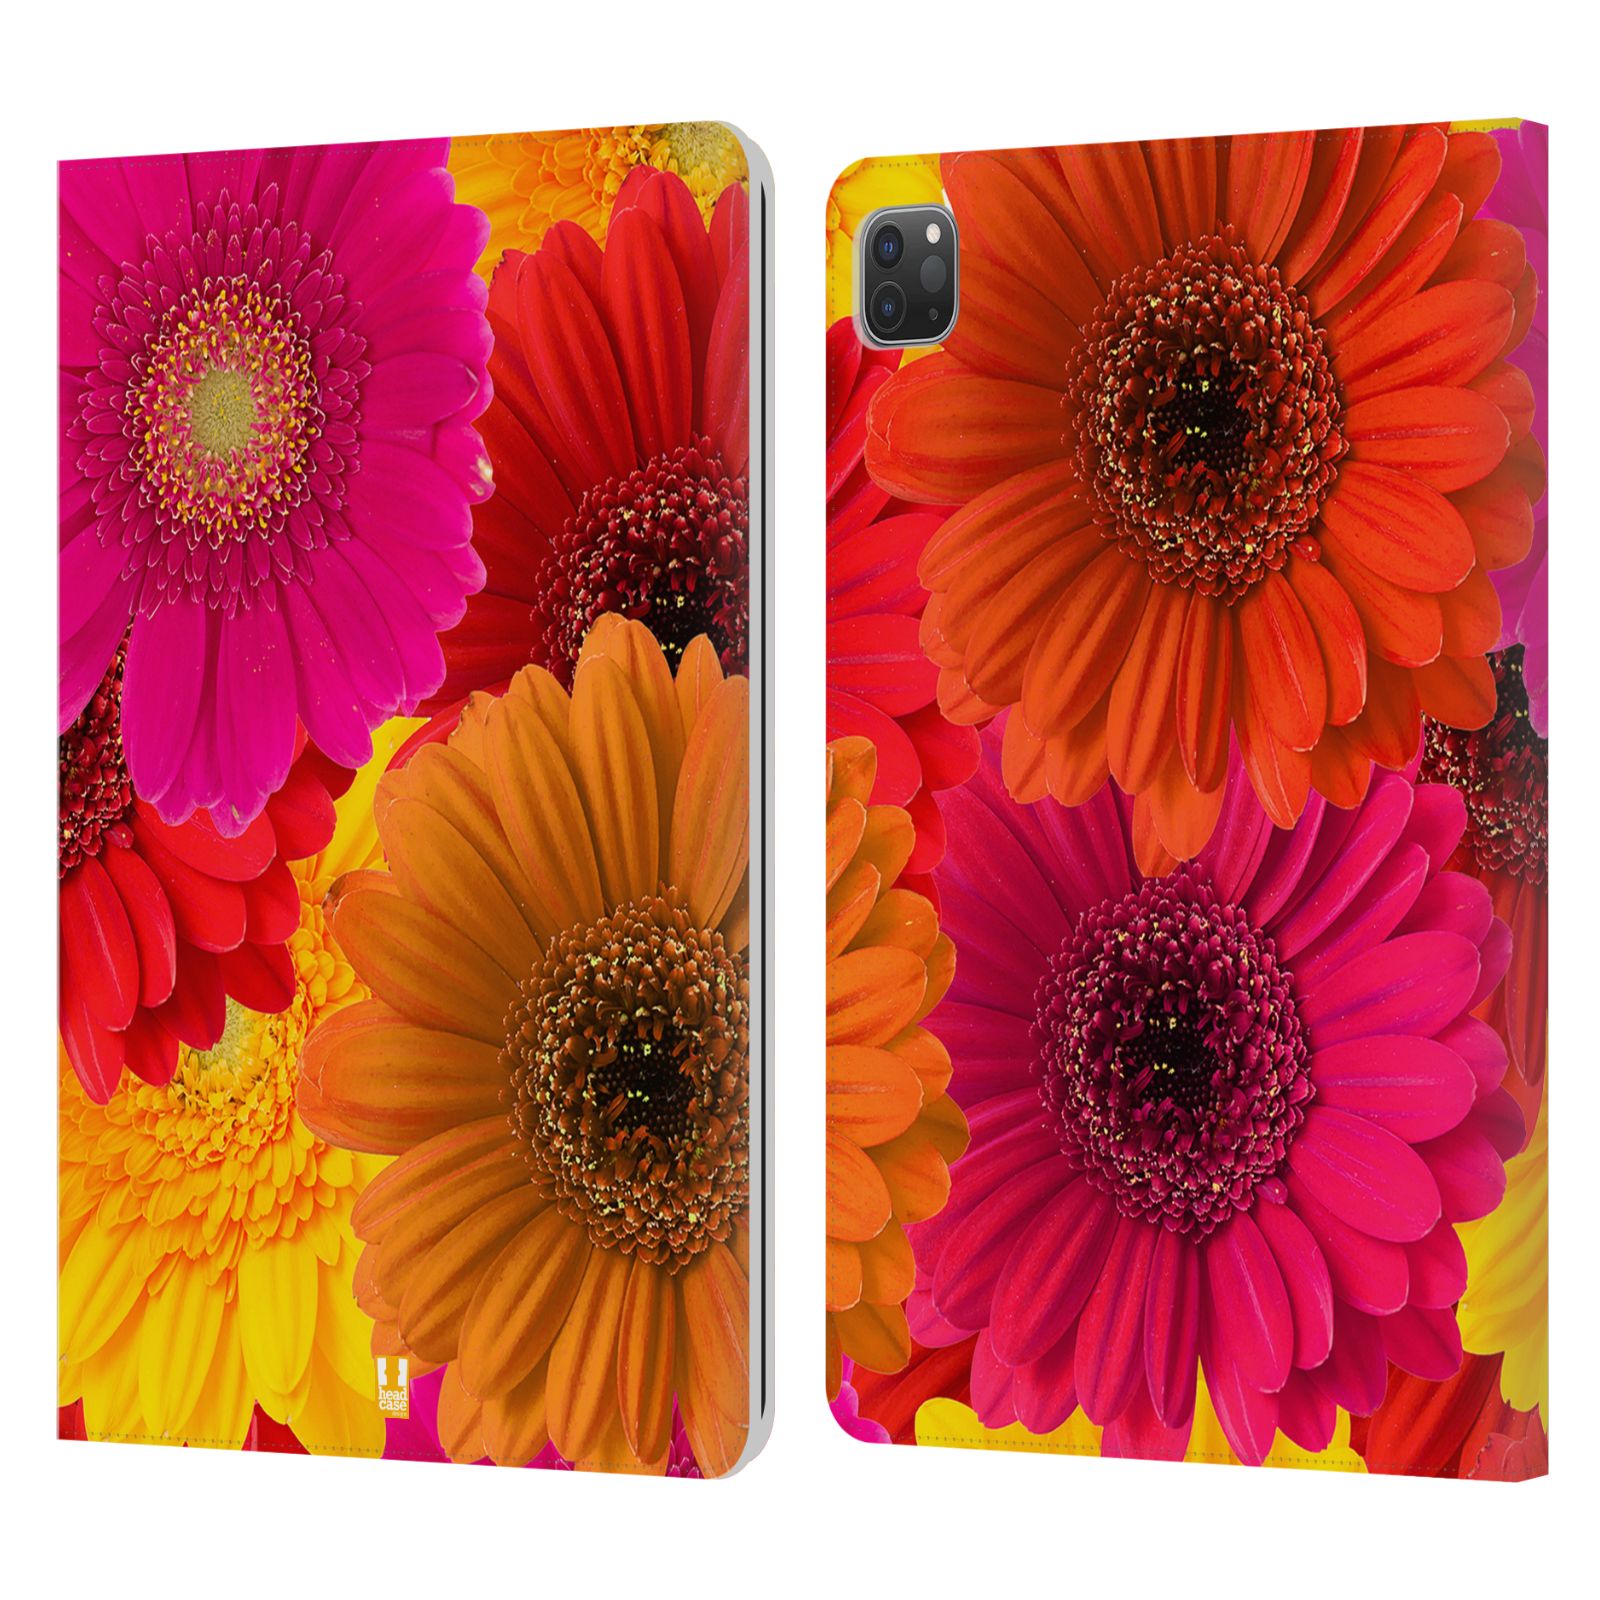 Pouzdro pro tablet Apple Ipad Pro 11 - HEAD CASE - květy foto fialová, oranžová GERBERA